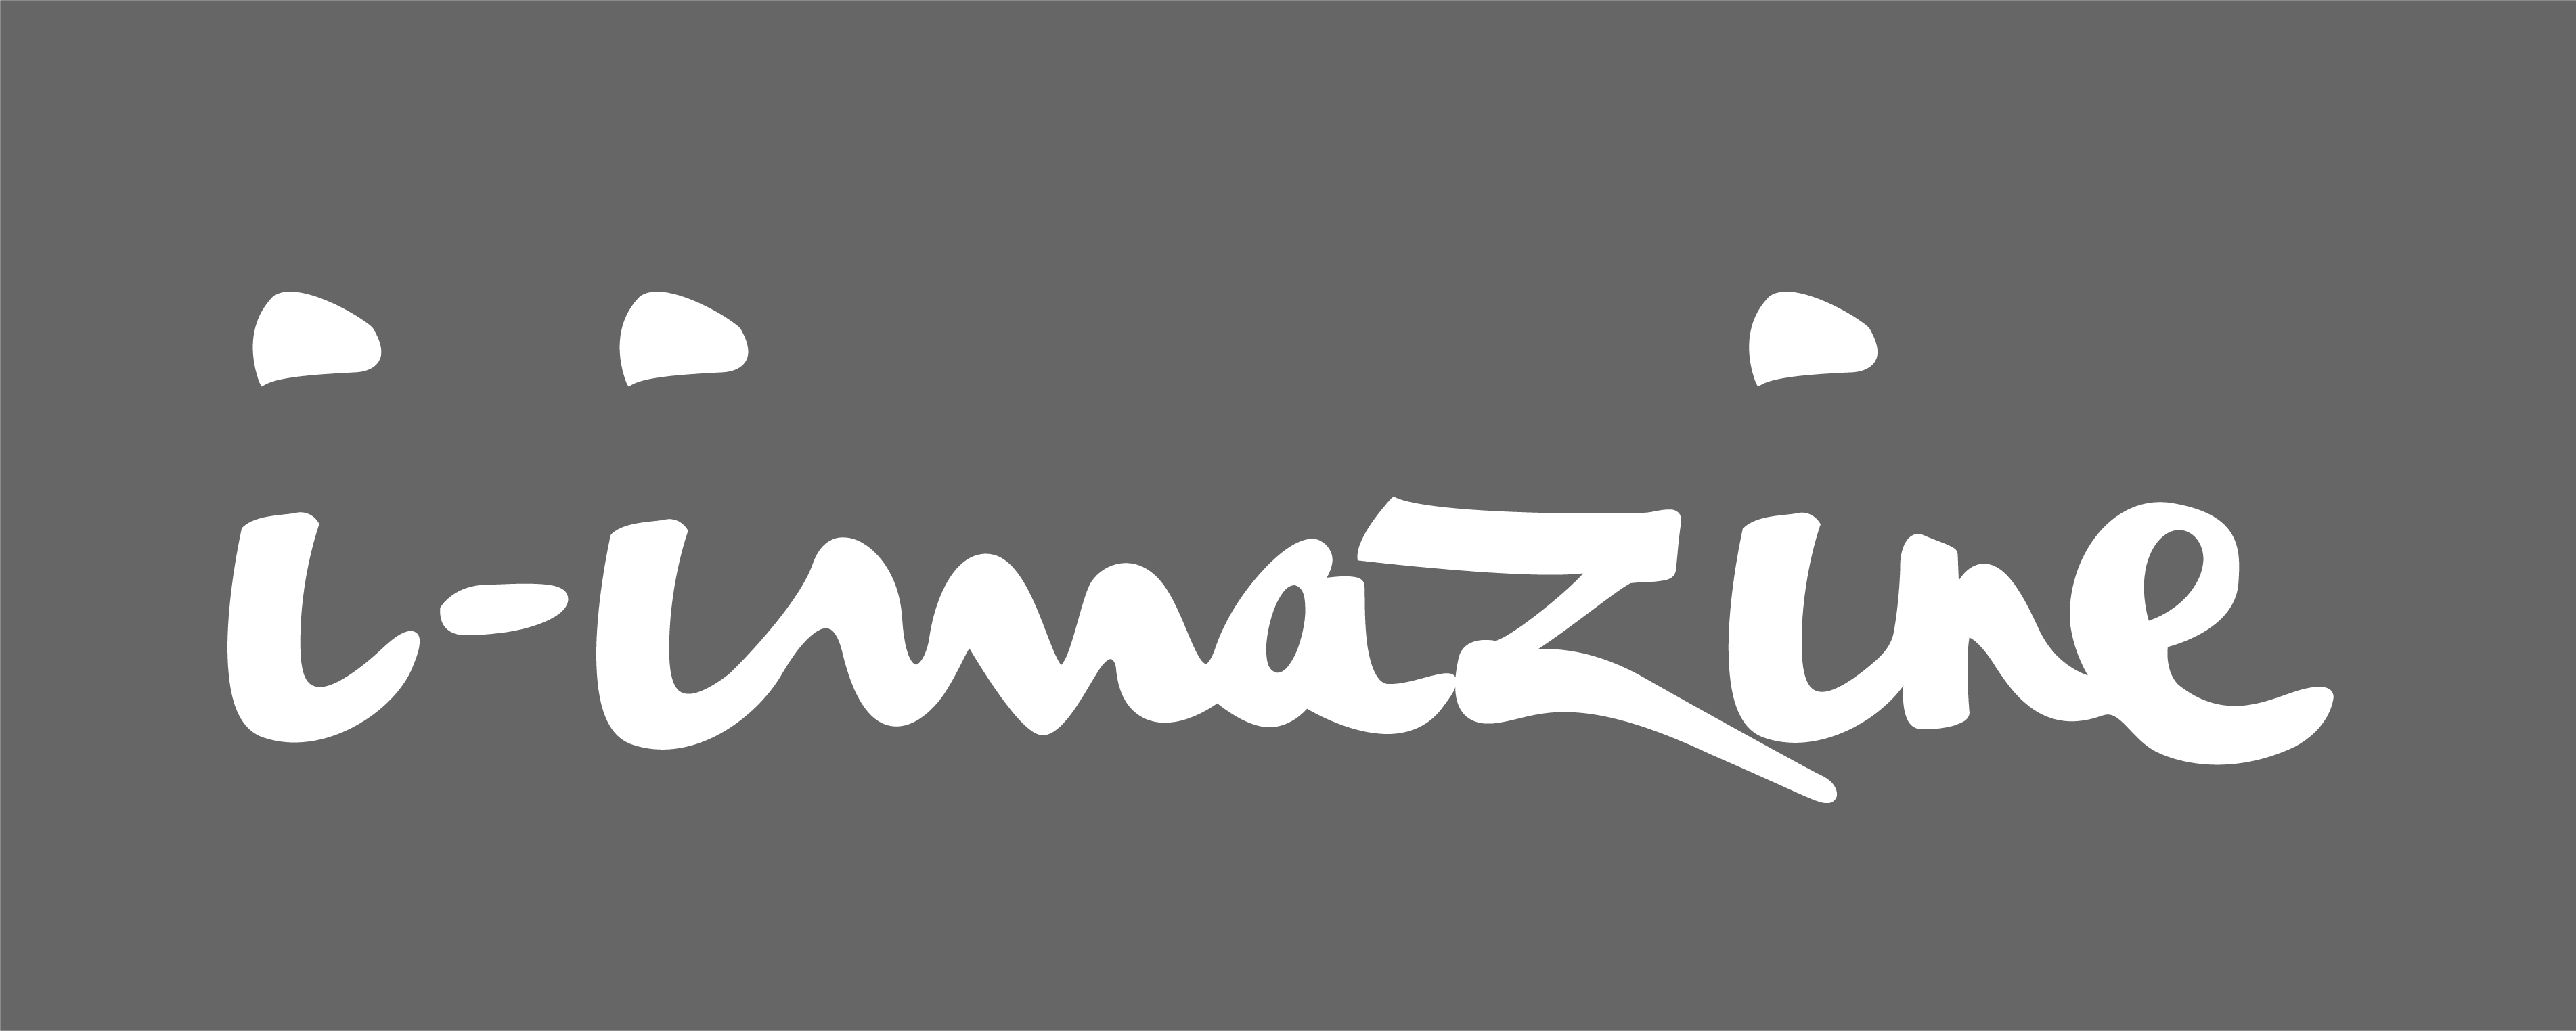 I-Imazine | Design studio